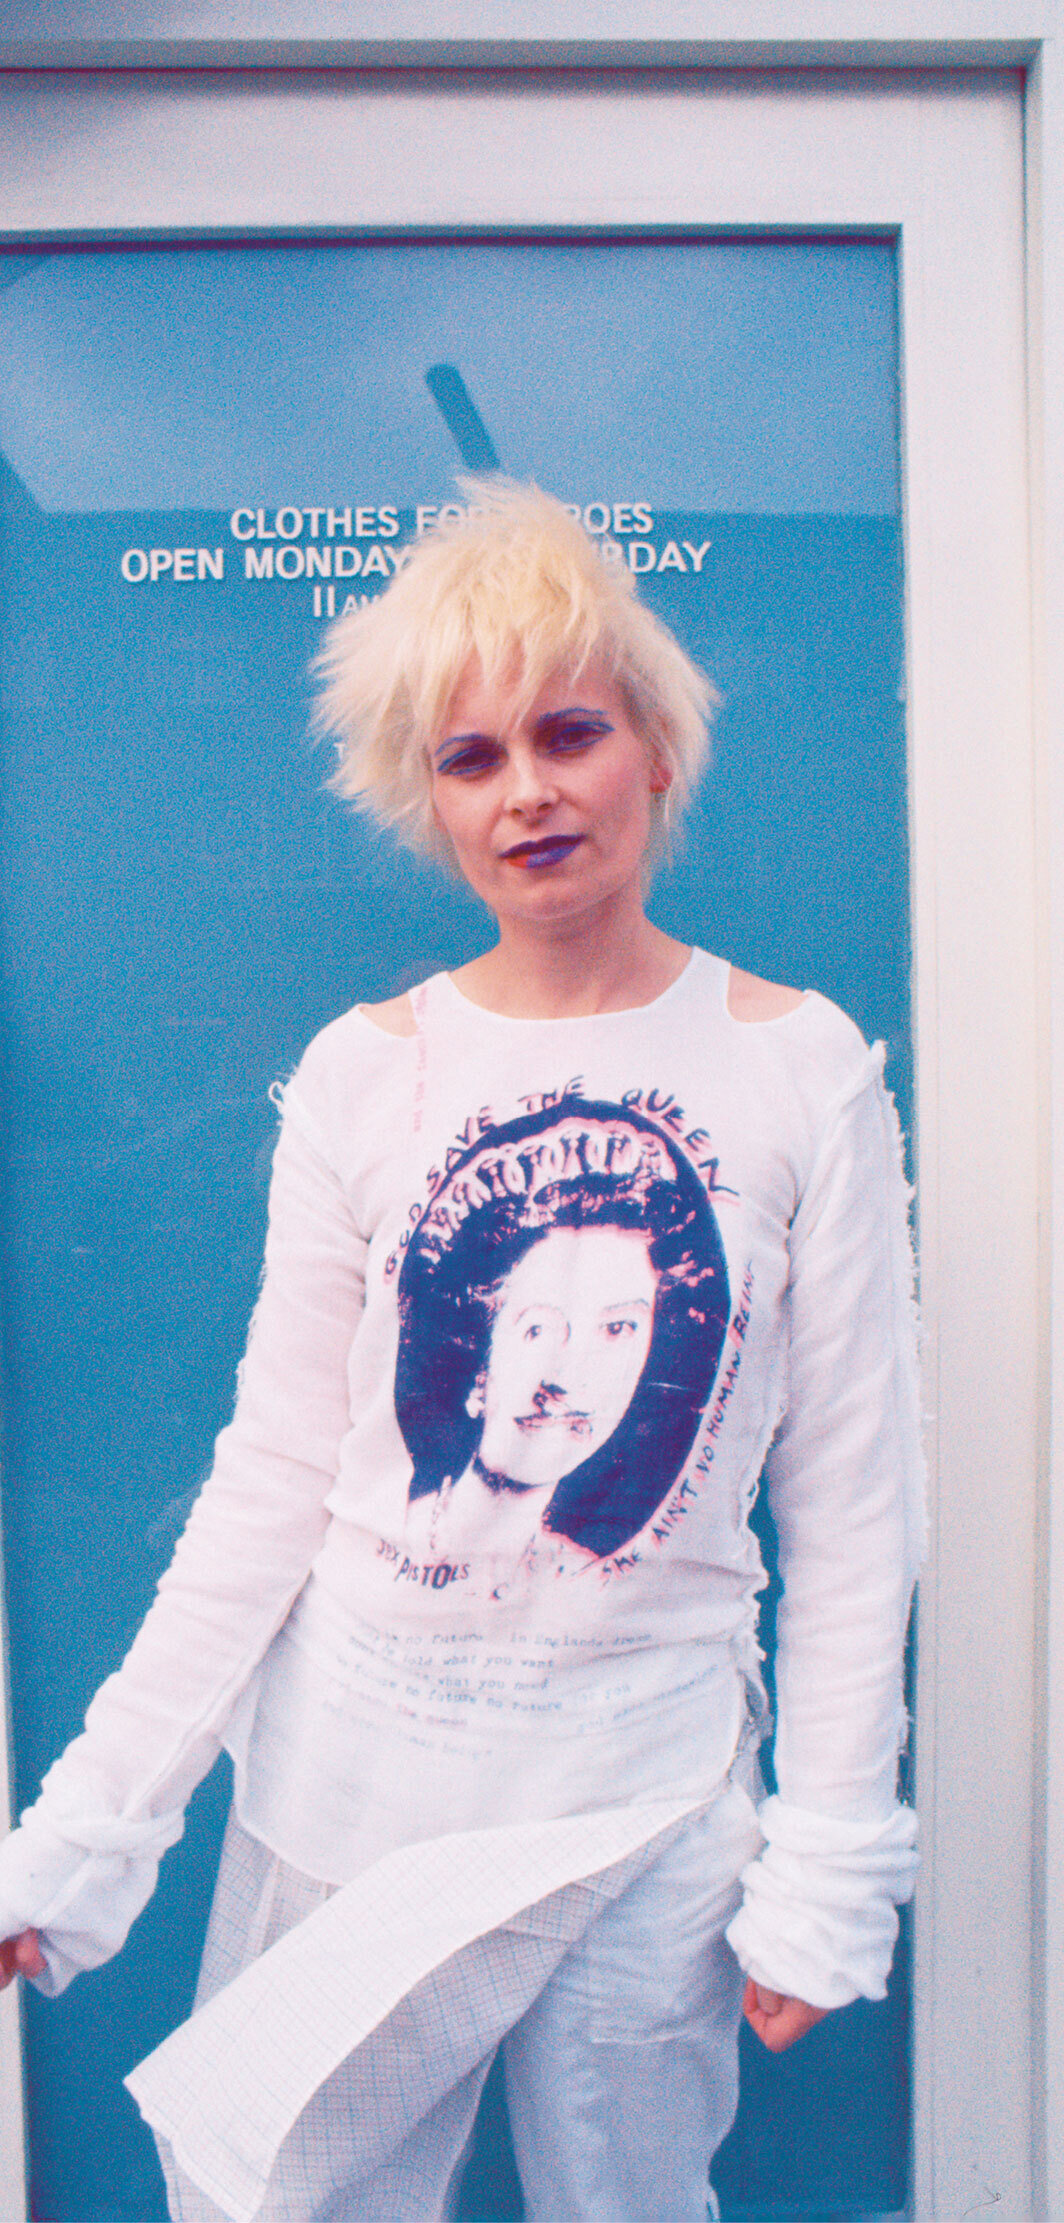 薇薇安·韦斯特伍德在她和马尔科姆·麦克拉伦的商店“煽动分子”前，伦敦，1977. 图片： Elisa Leonelli/Shutterstock.